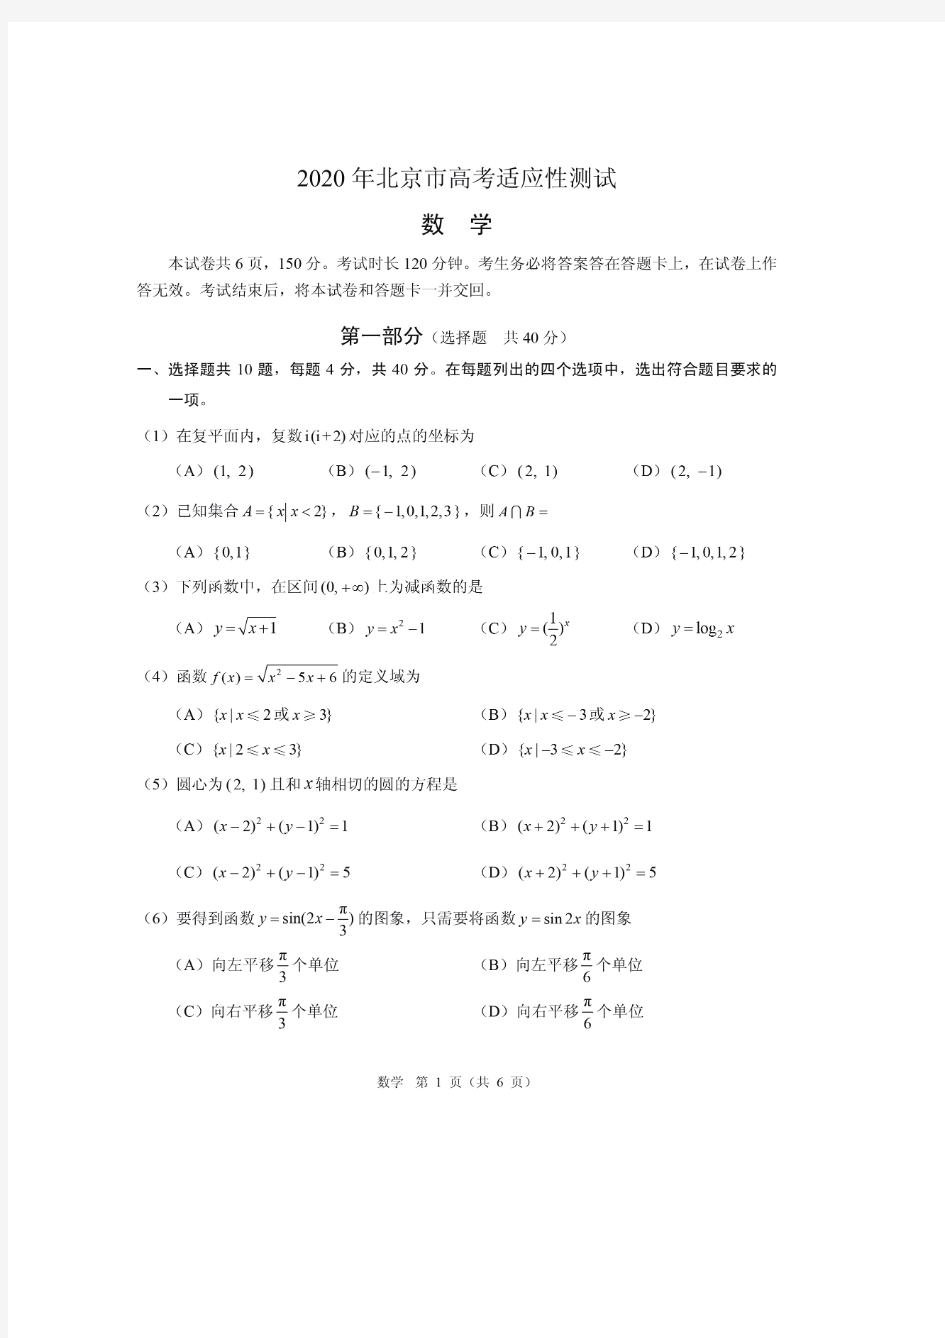 2020年北京高考适应性统一考试试题加答案全